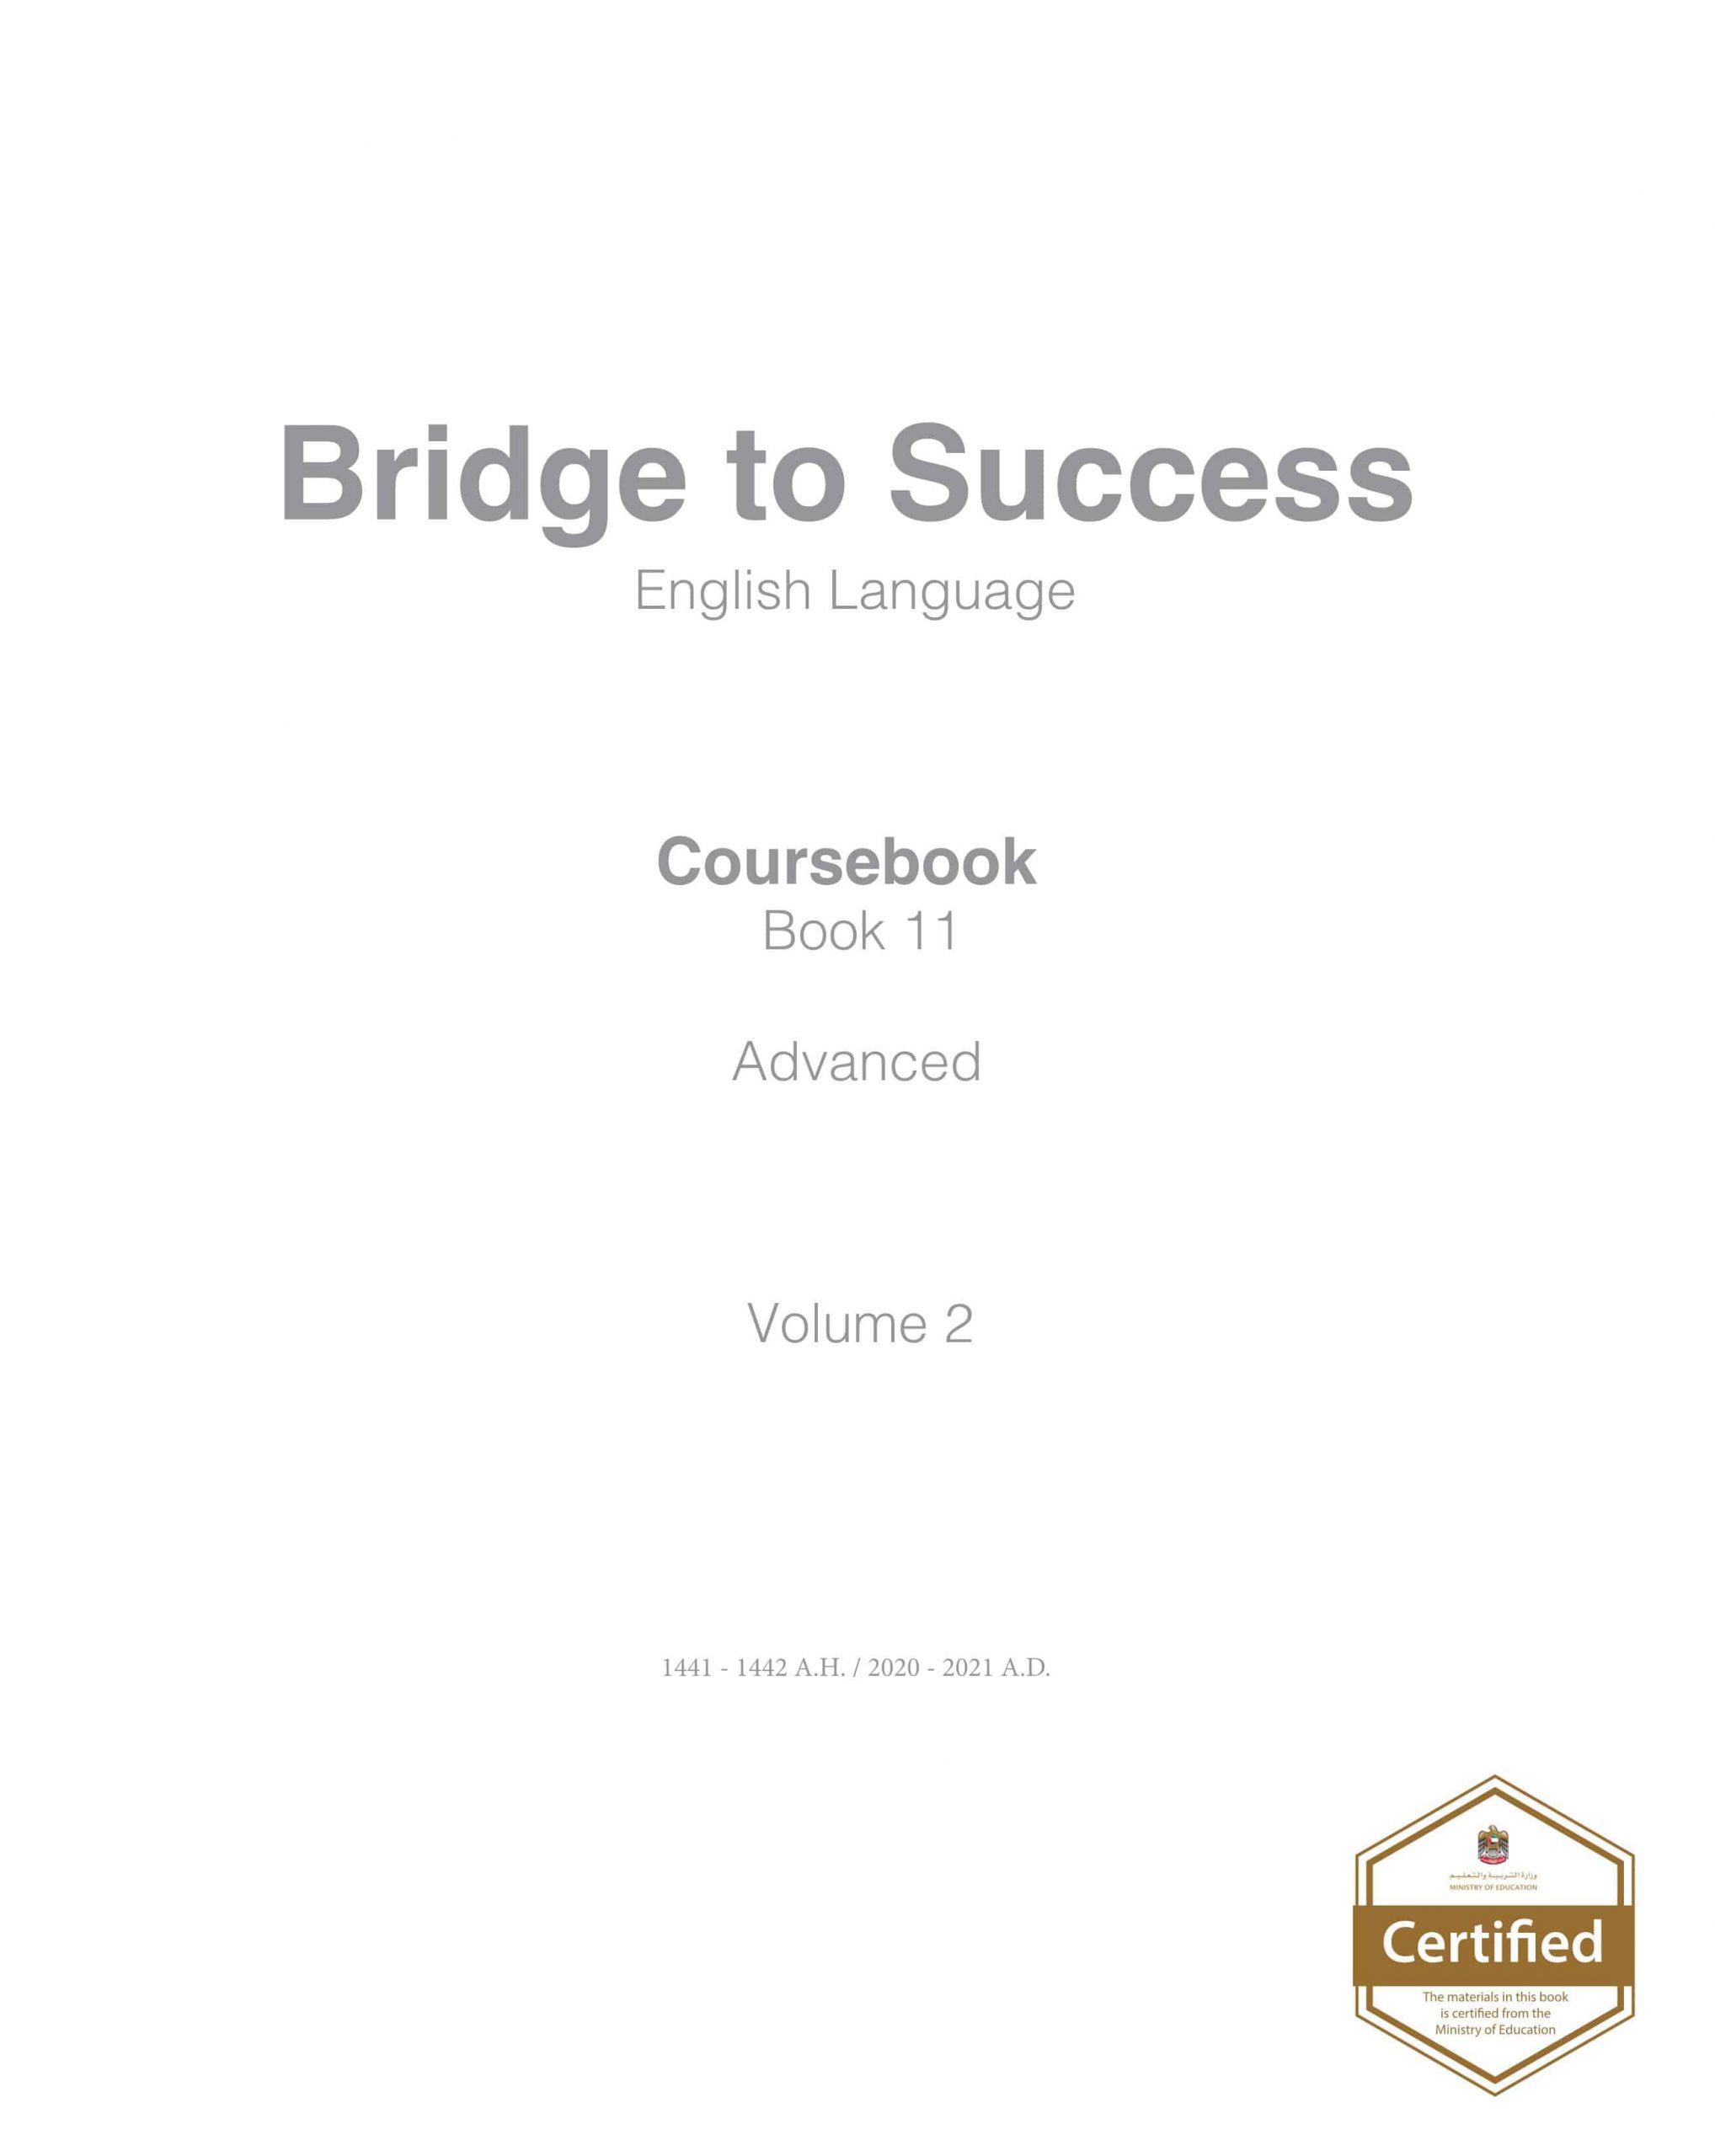 كتاب الطالب Course book الفصل الدراسي الثاني 2020-2021 الصف الحادي عشر مادة اللغة الانجليزية 